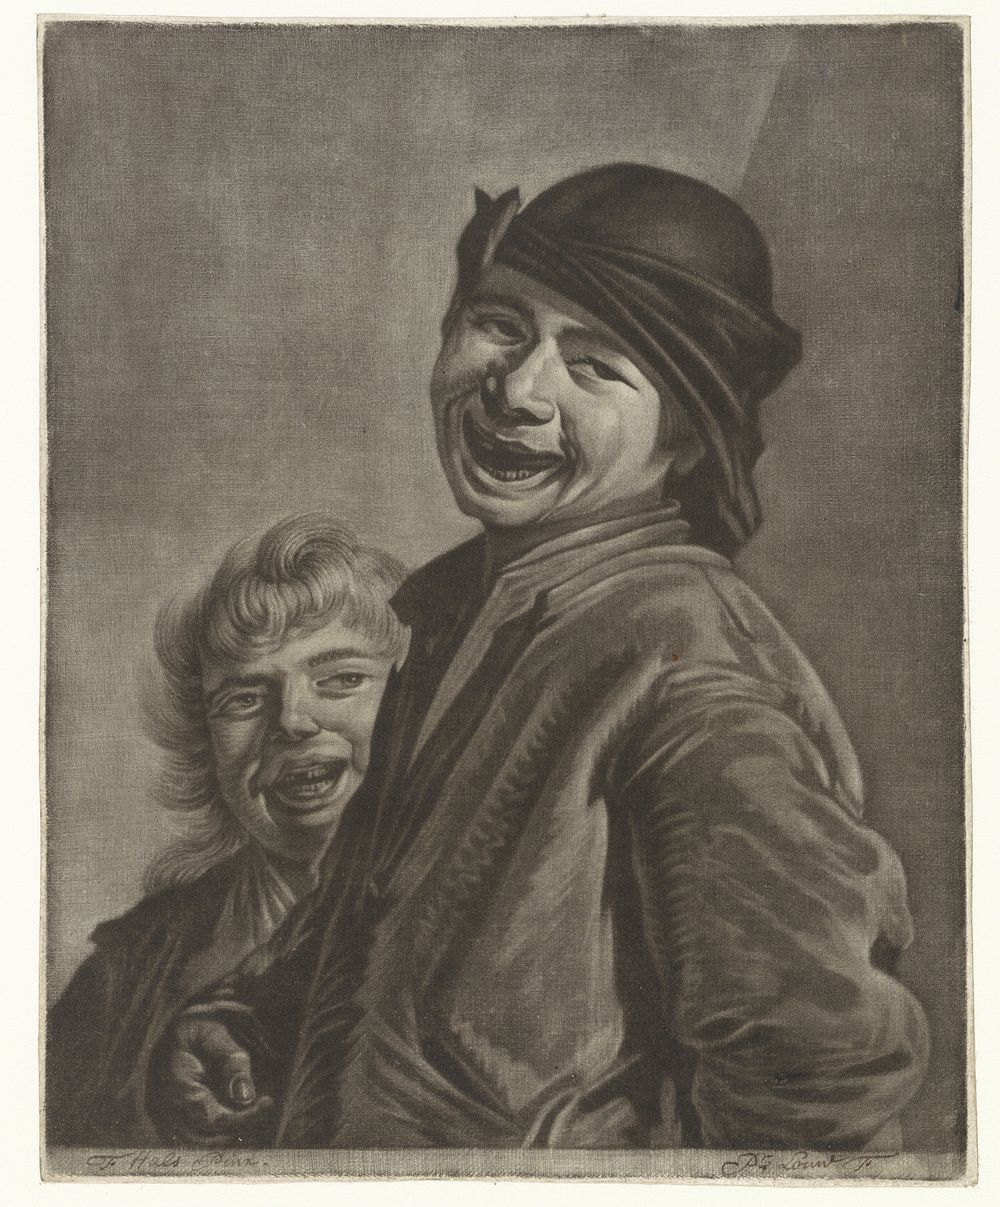 Twee lachende jongens (1743 - 1800) by Pieter Louw and Frans Hals